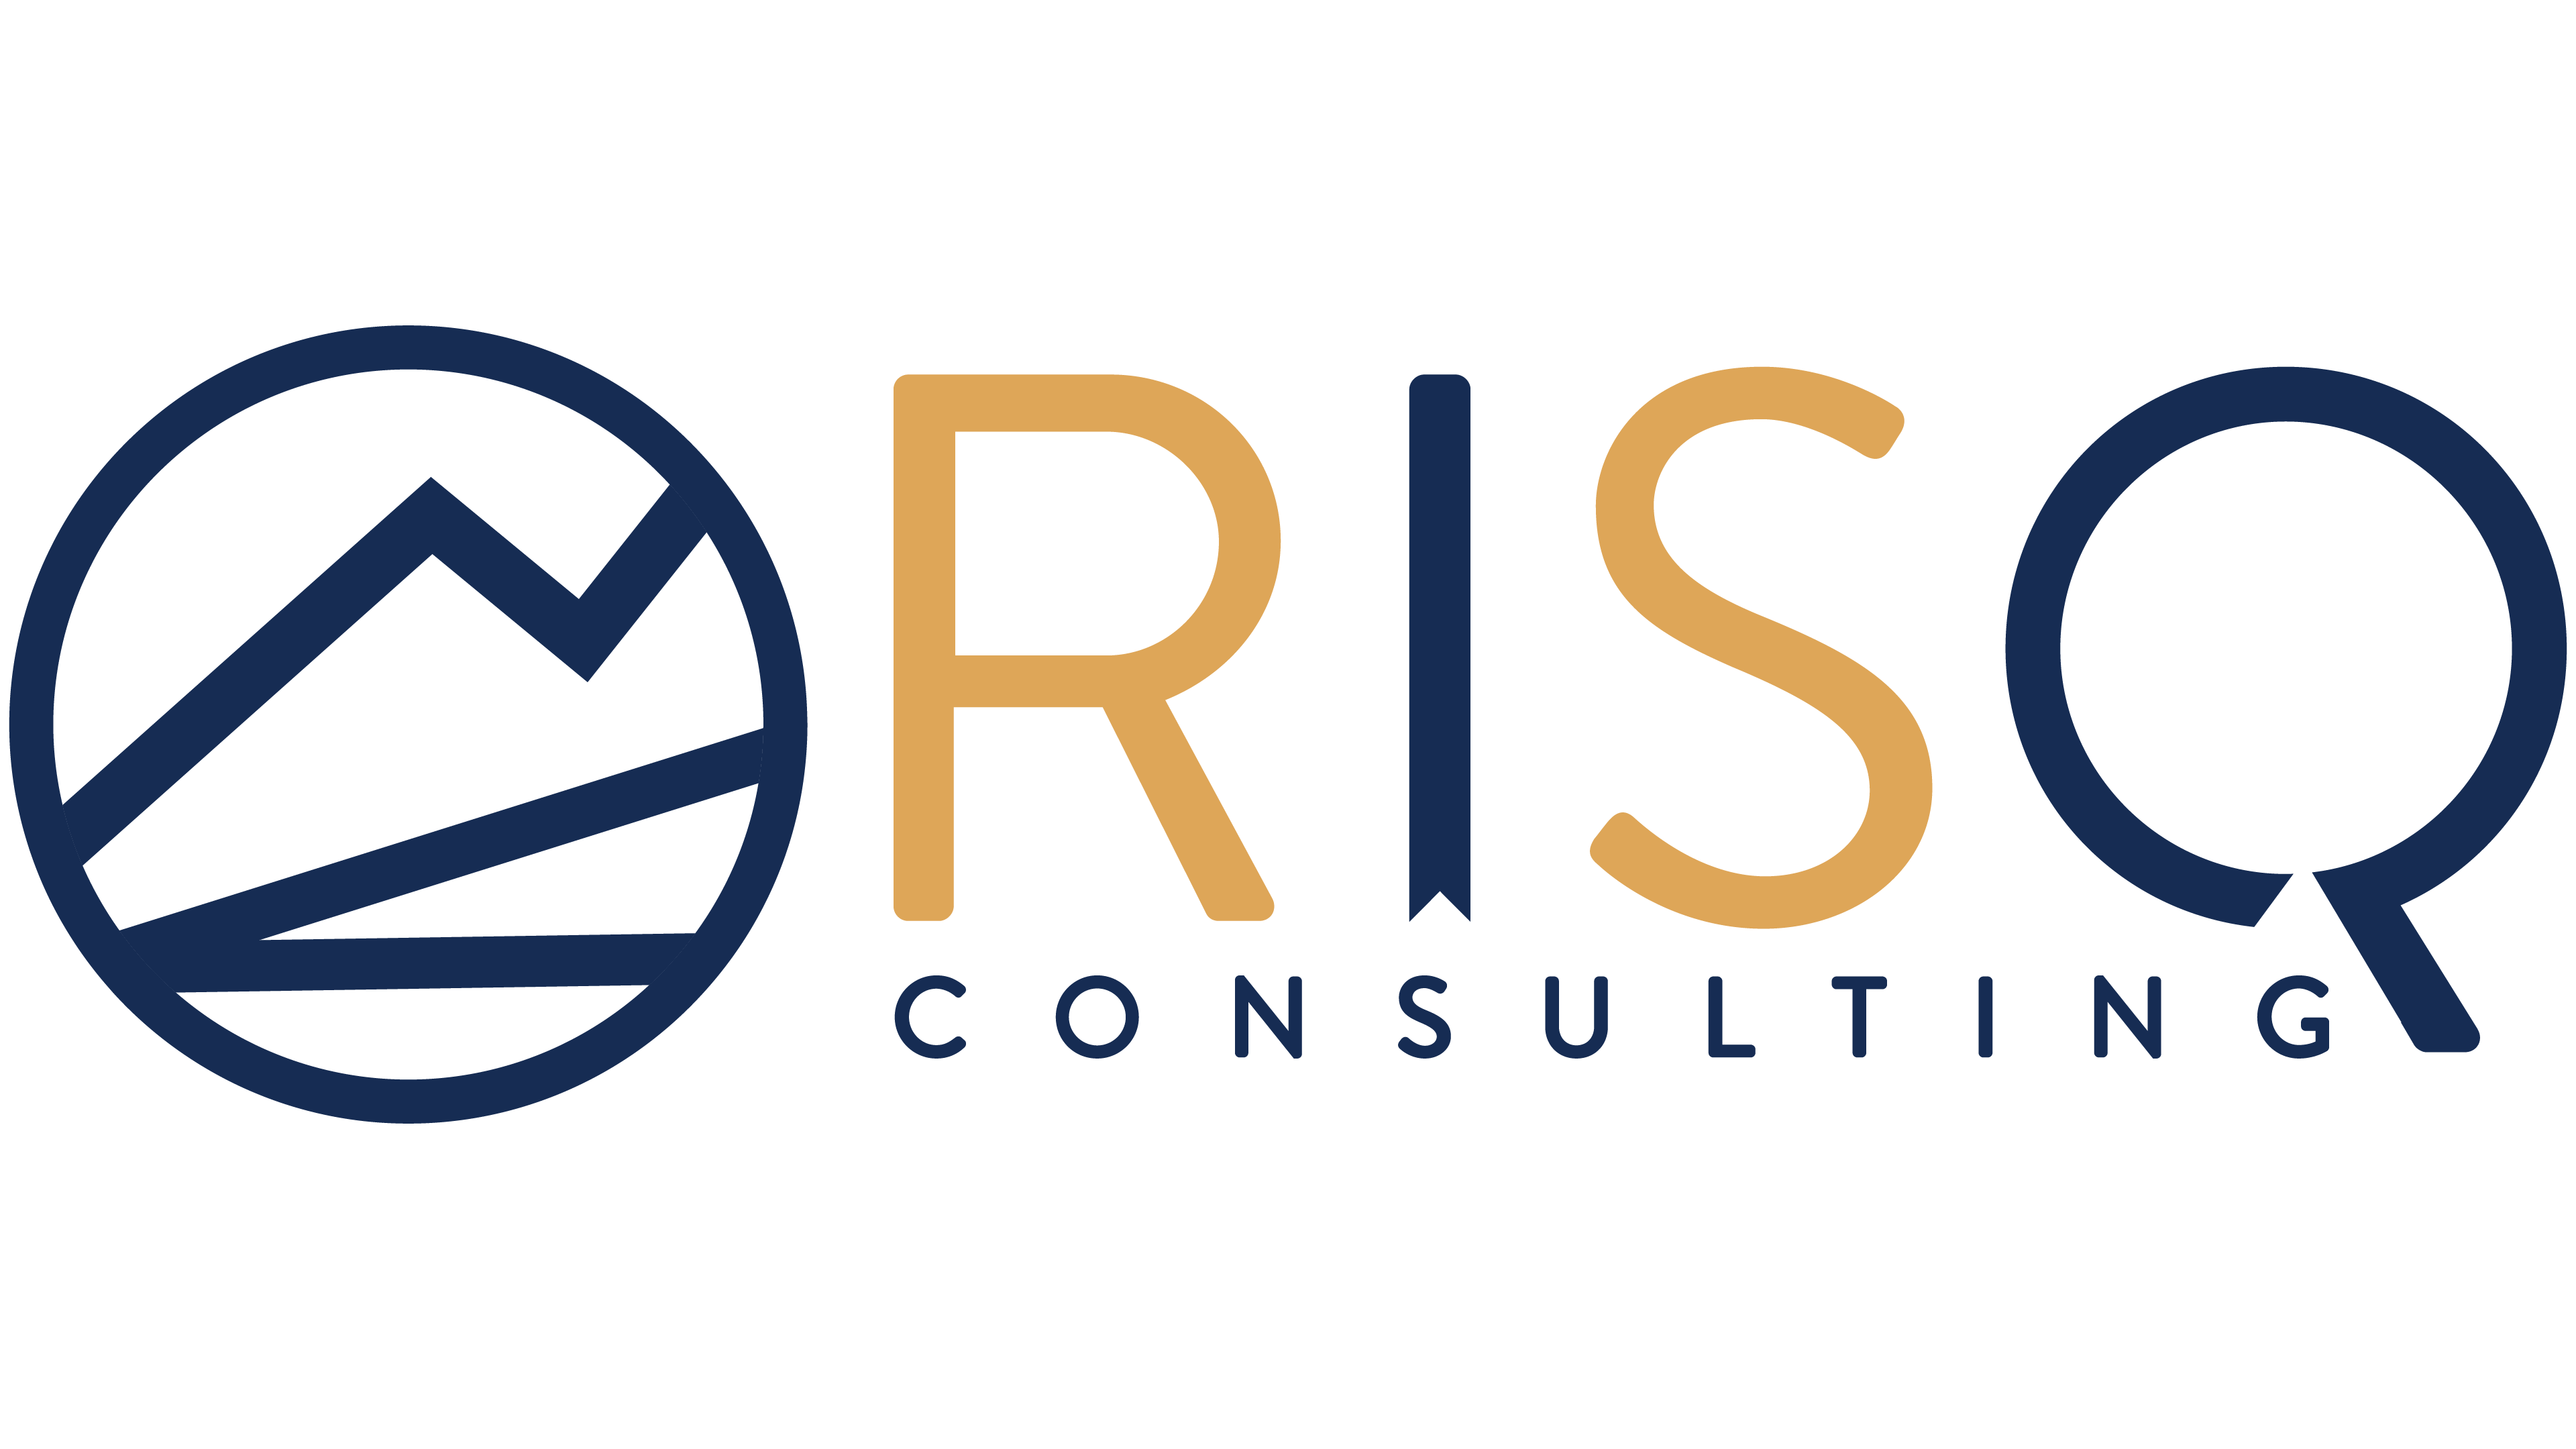 RISQ Consulting